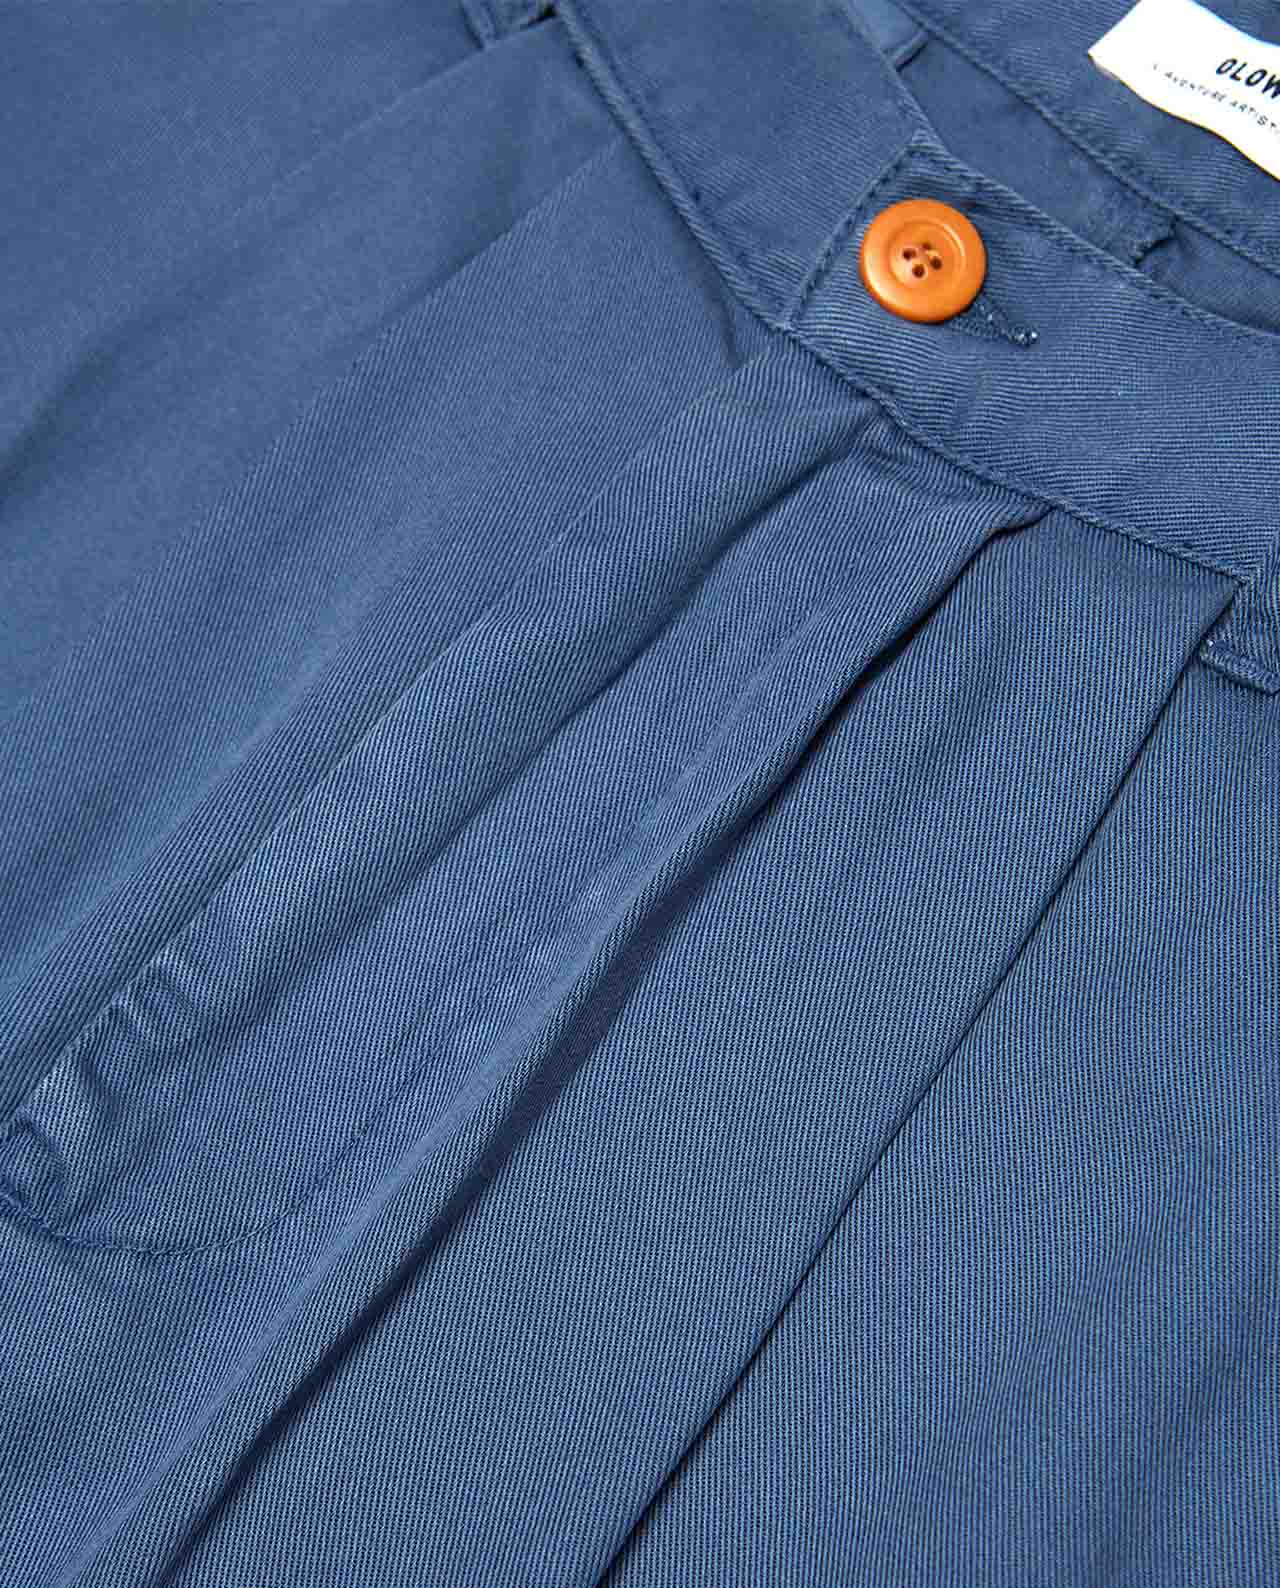 Marché Commun pantalon à pinces en tencel bleu cobalt olow